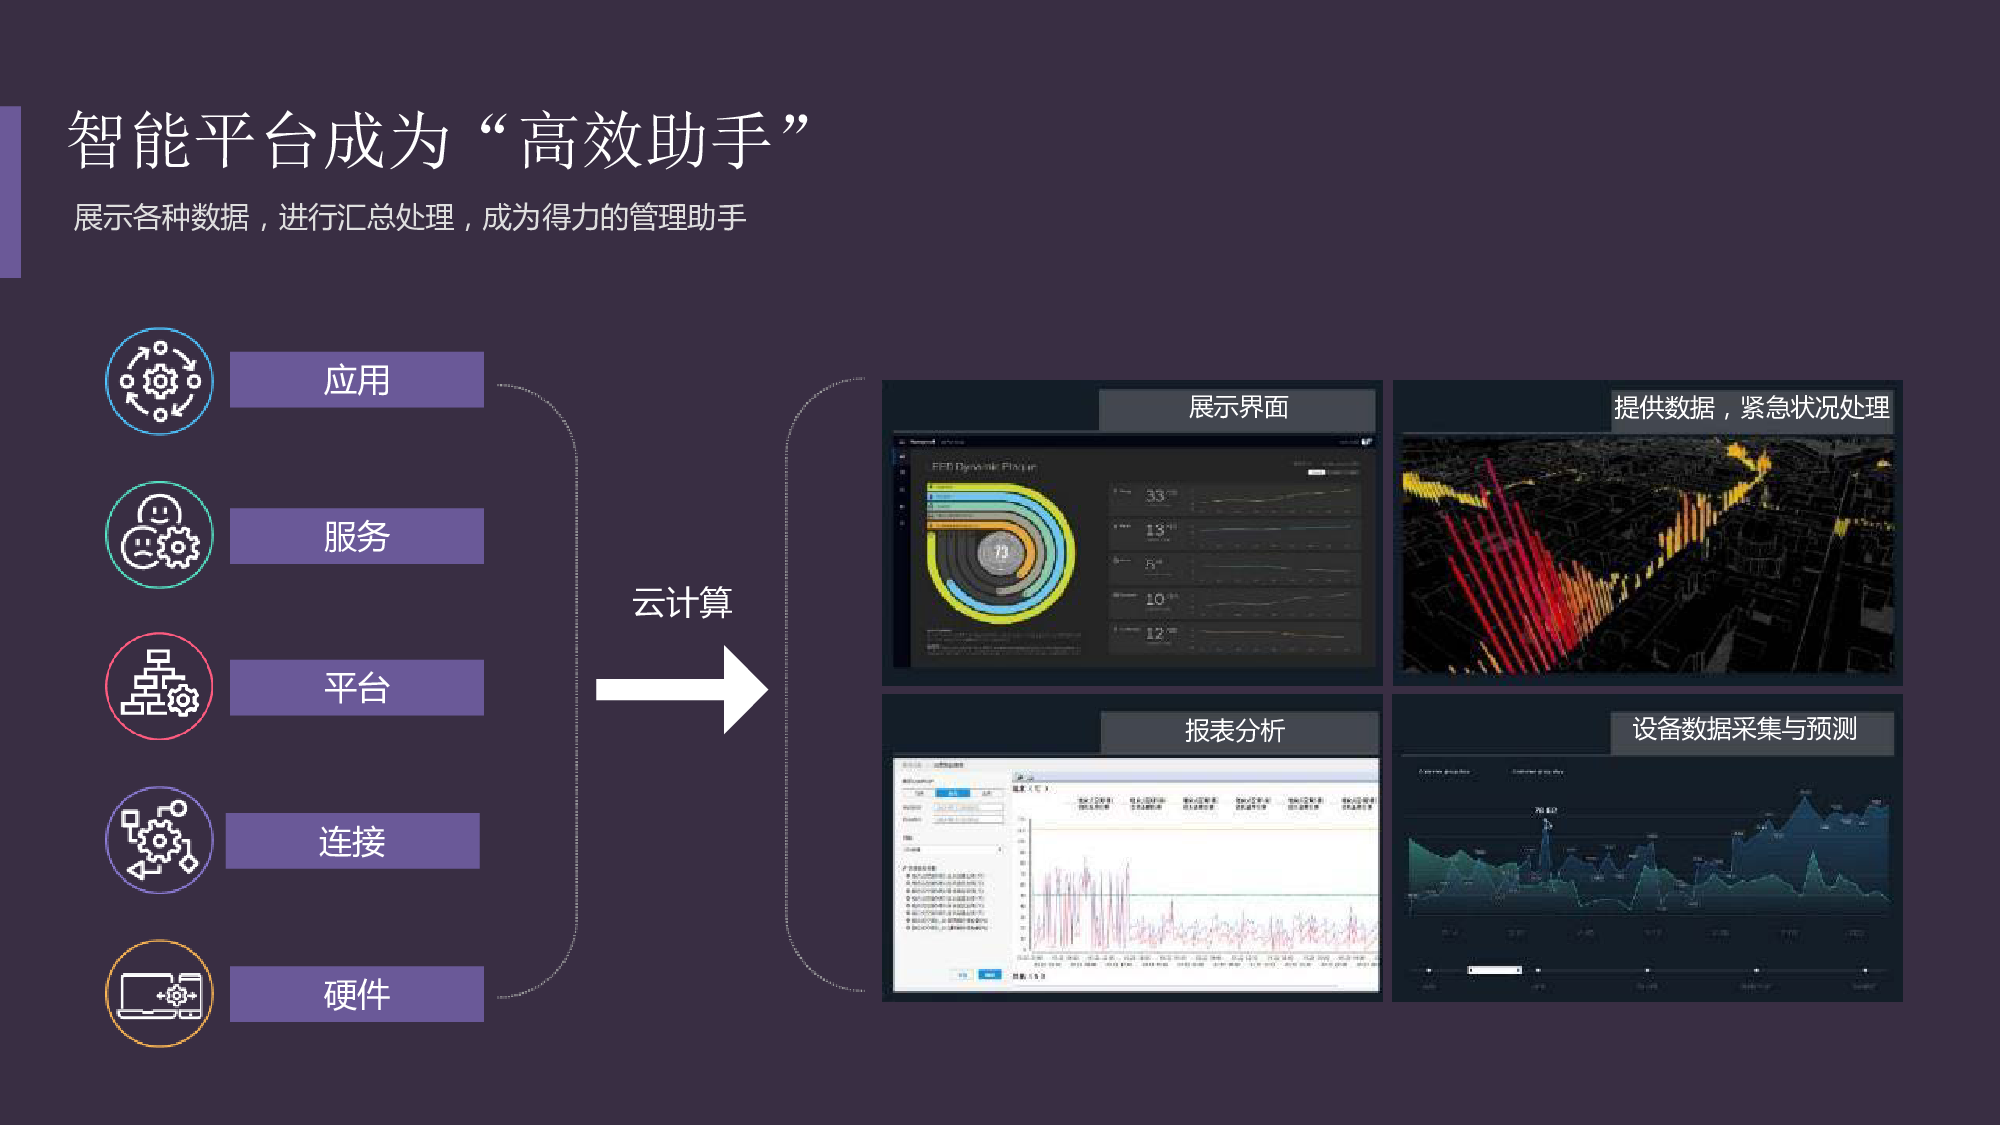 上海桑锐电子智能化园区远程抄表方案图片